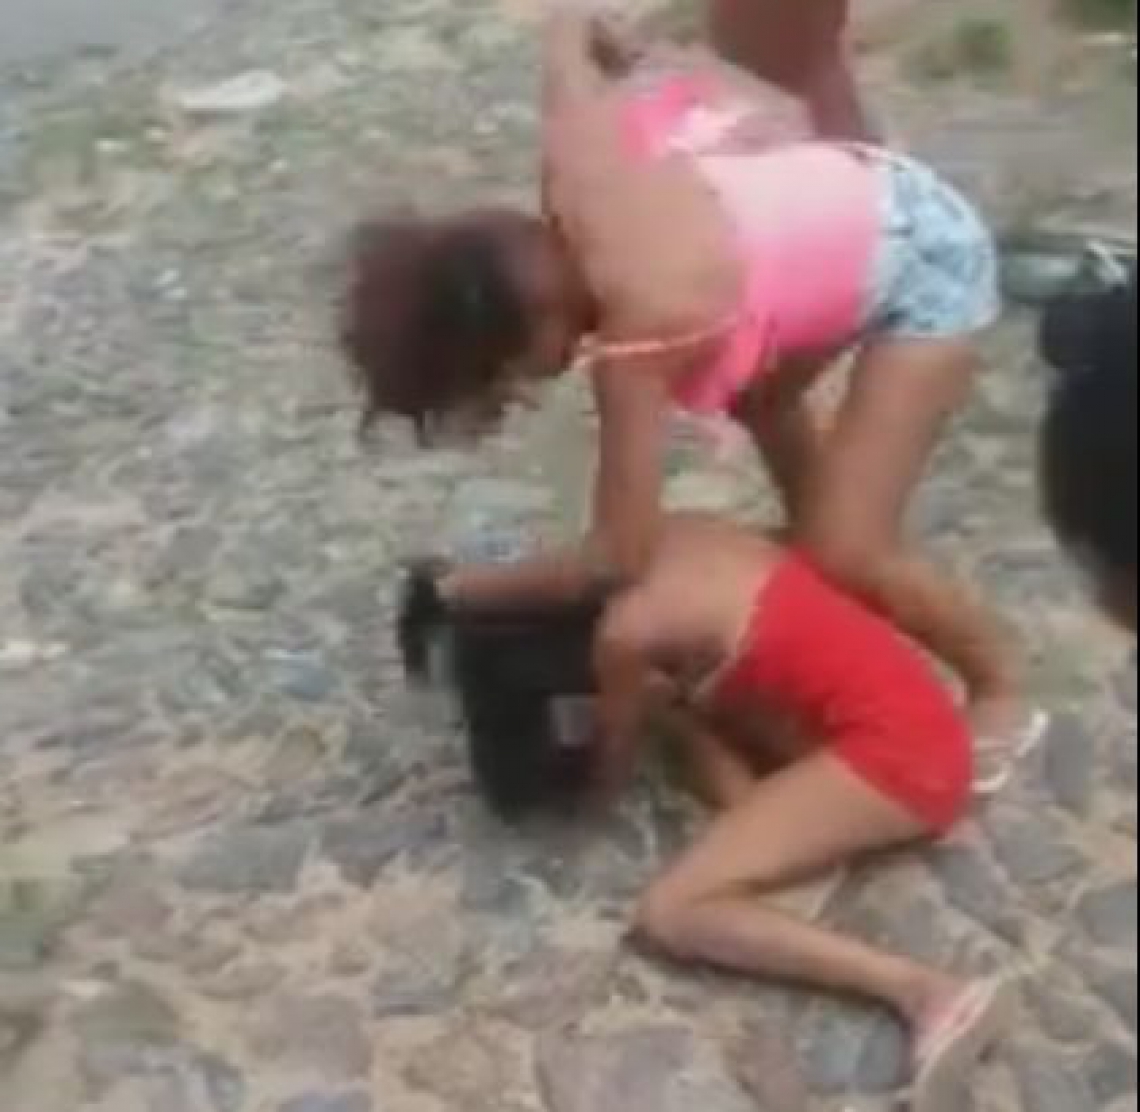 Garota sendo agredida em rua de Sobral.